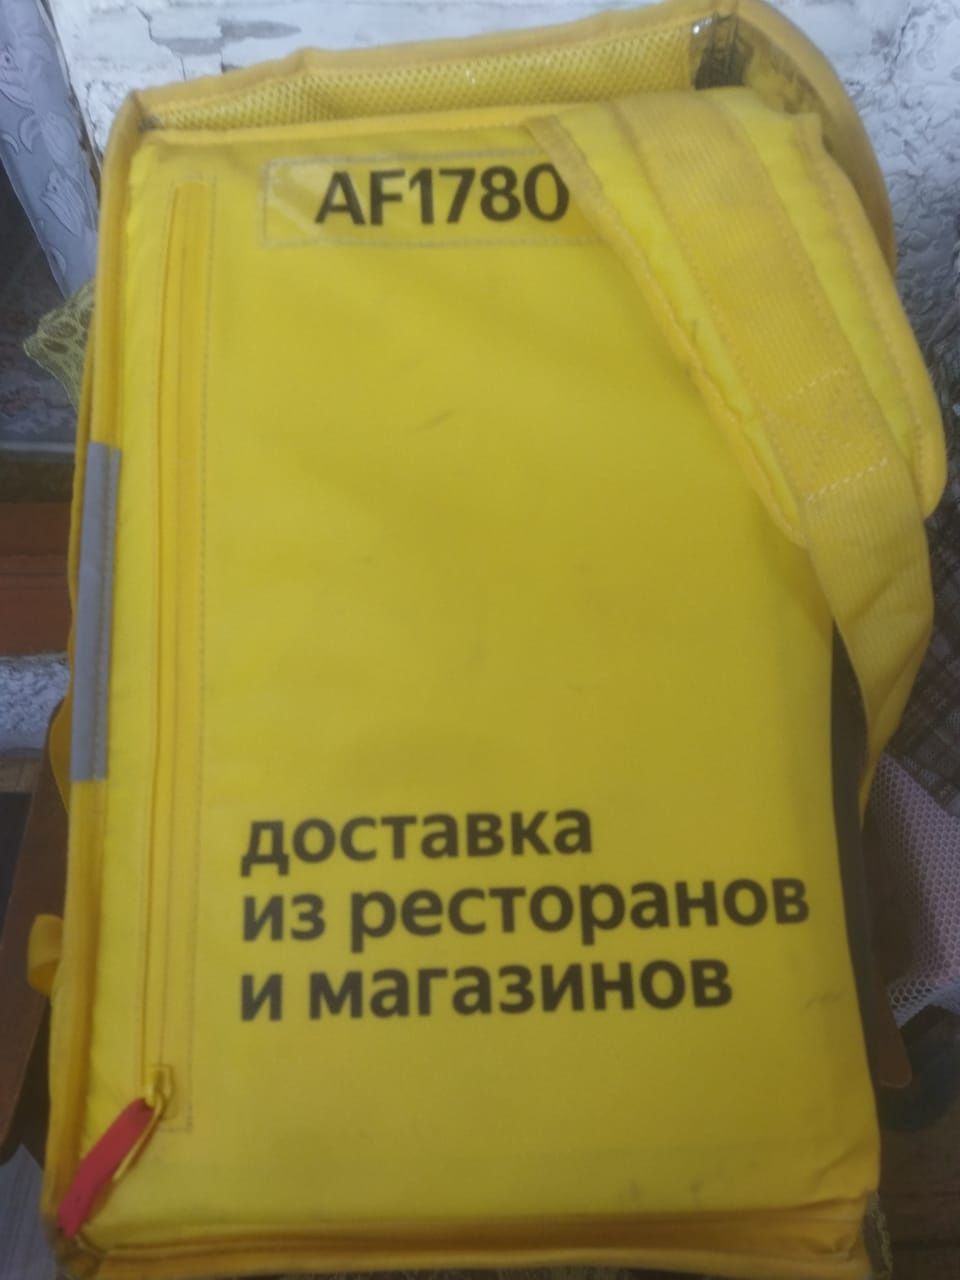 Термосумка , сумка Яндекс для доставки в отличном состоянии